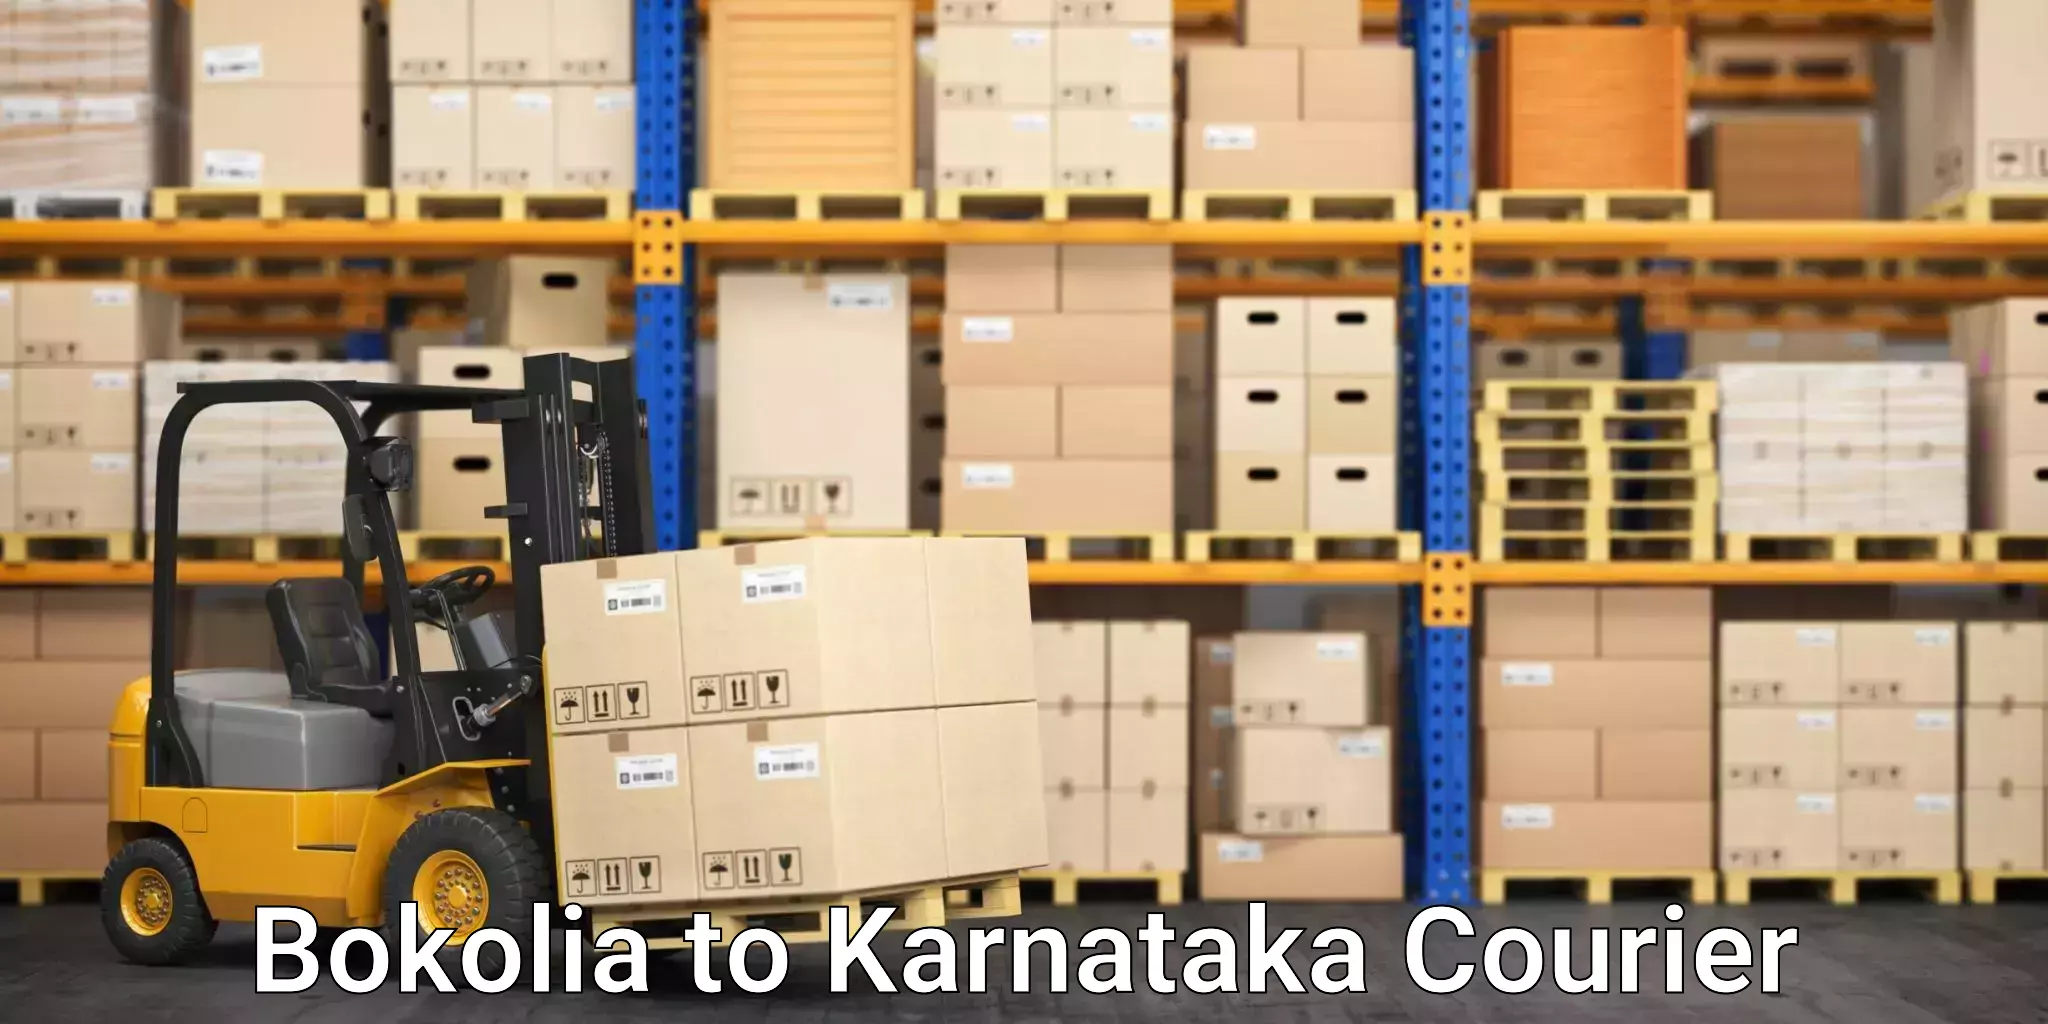 Tech-enabled shipping Bokolia to Kulshekar